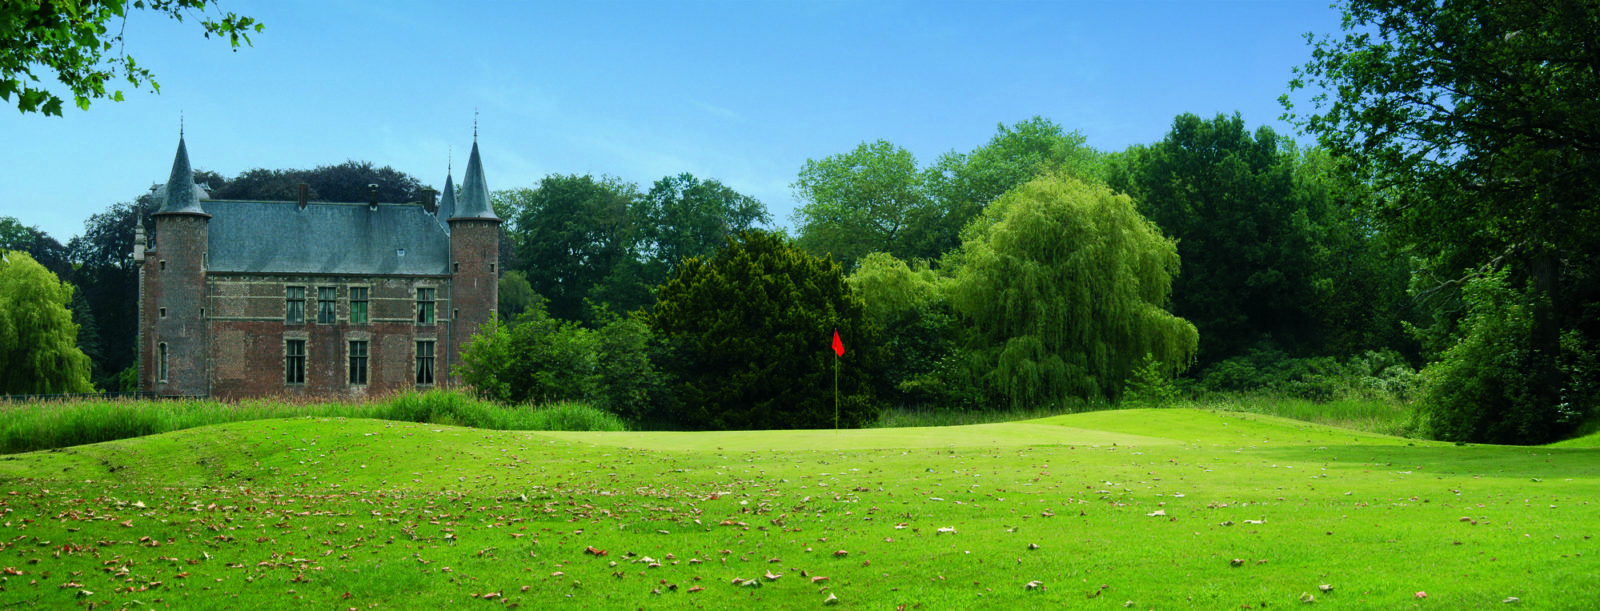 Cleydael Flanders Golf Club